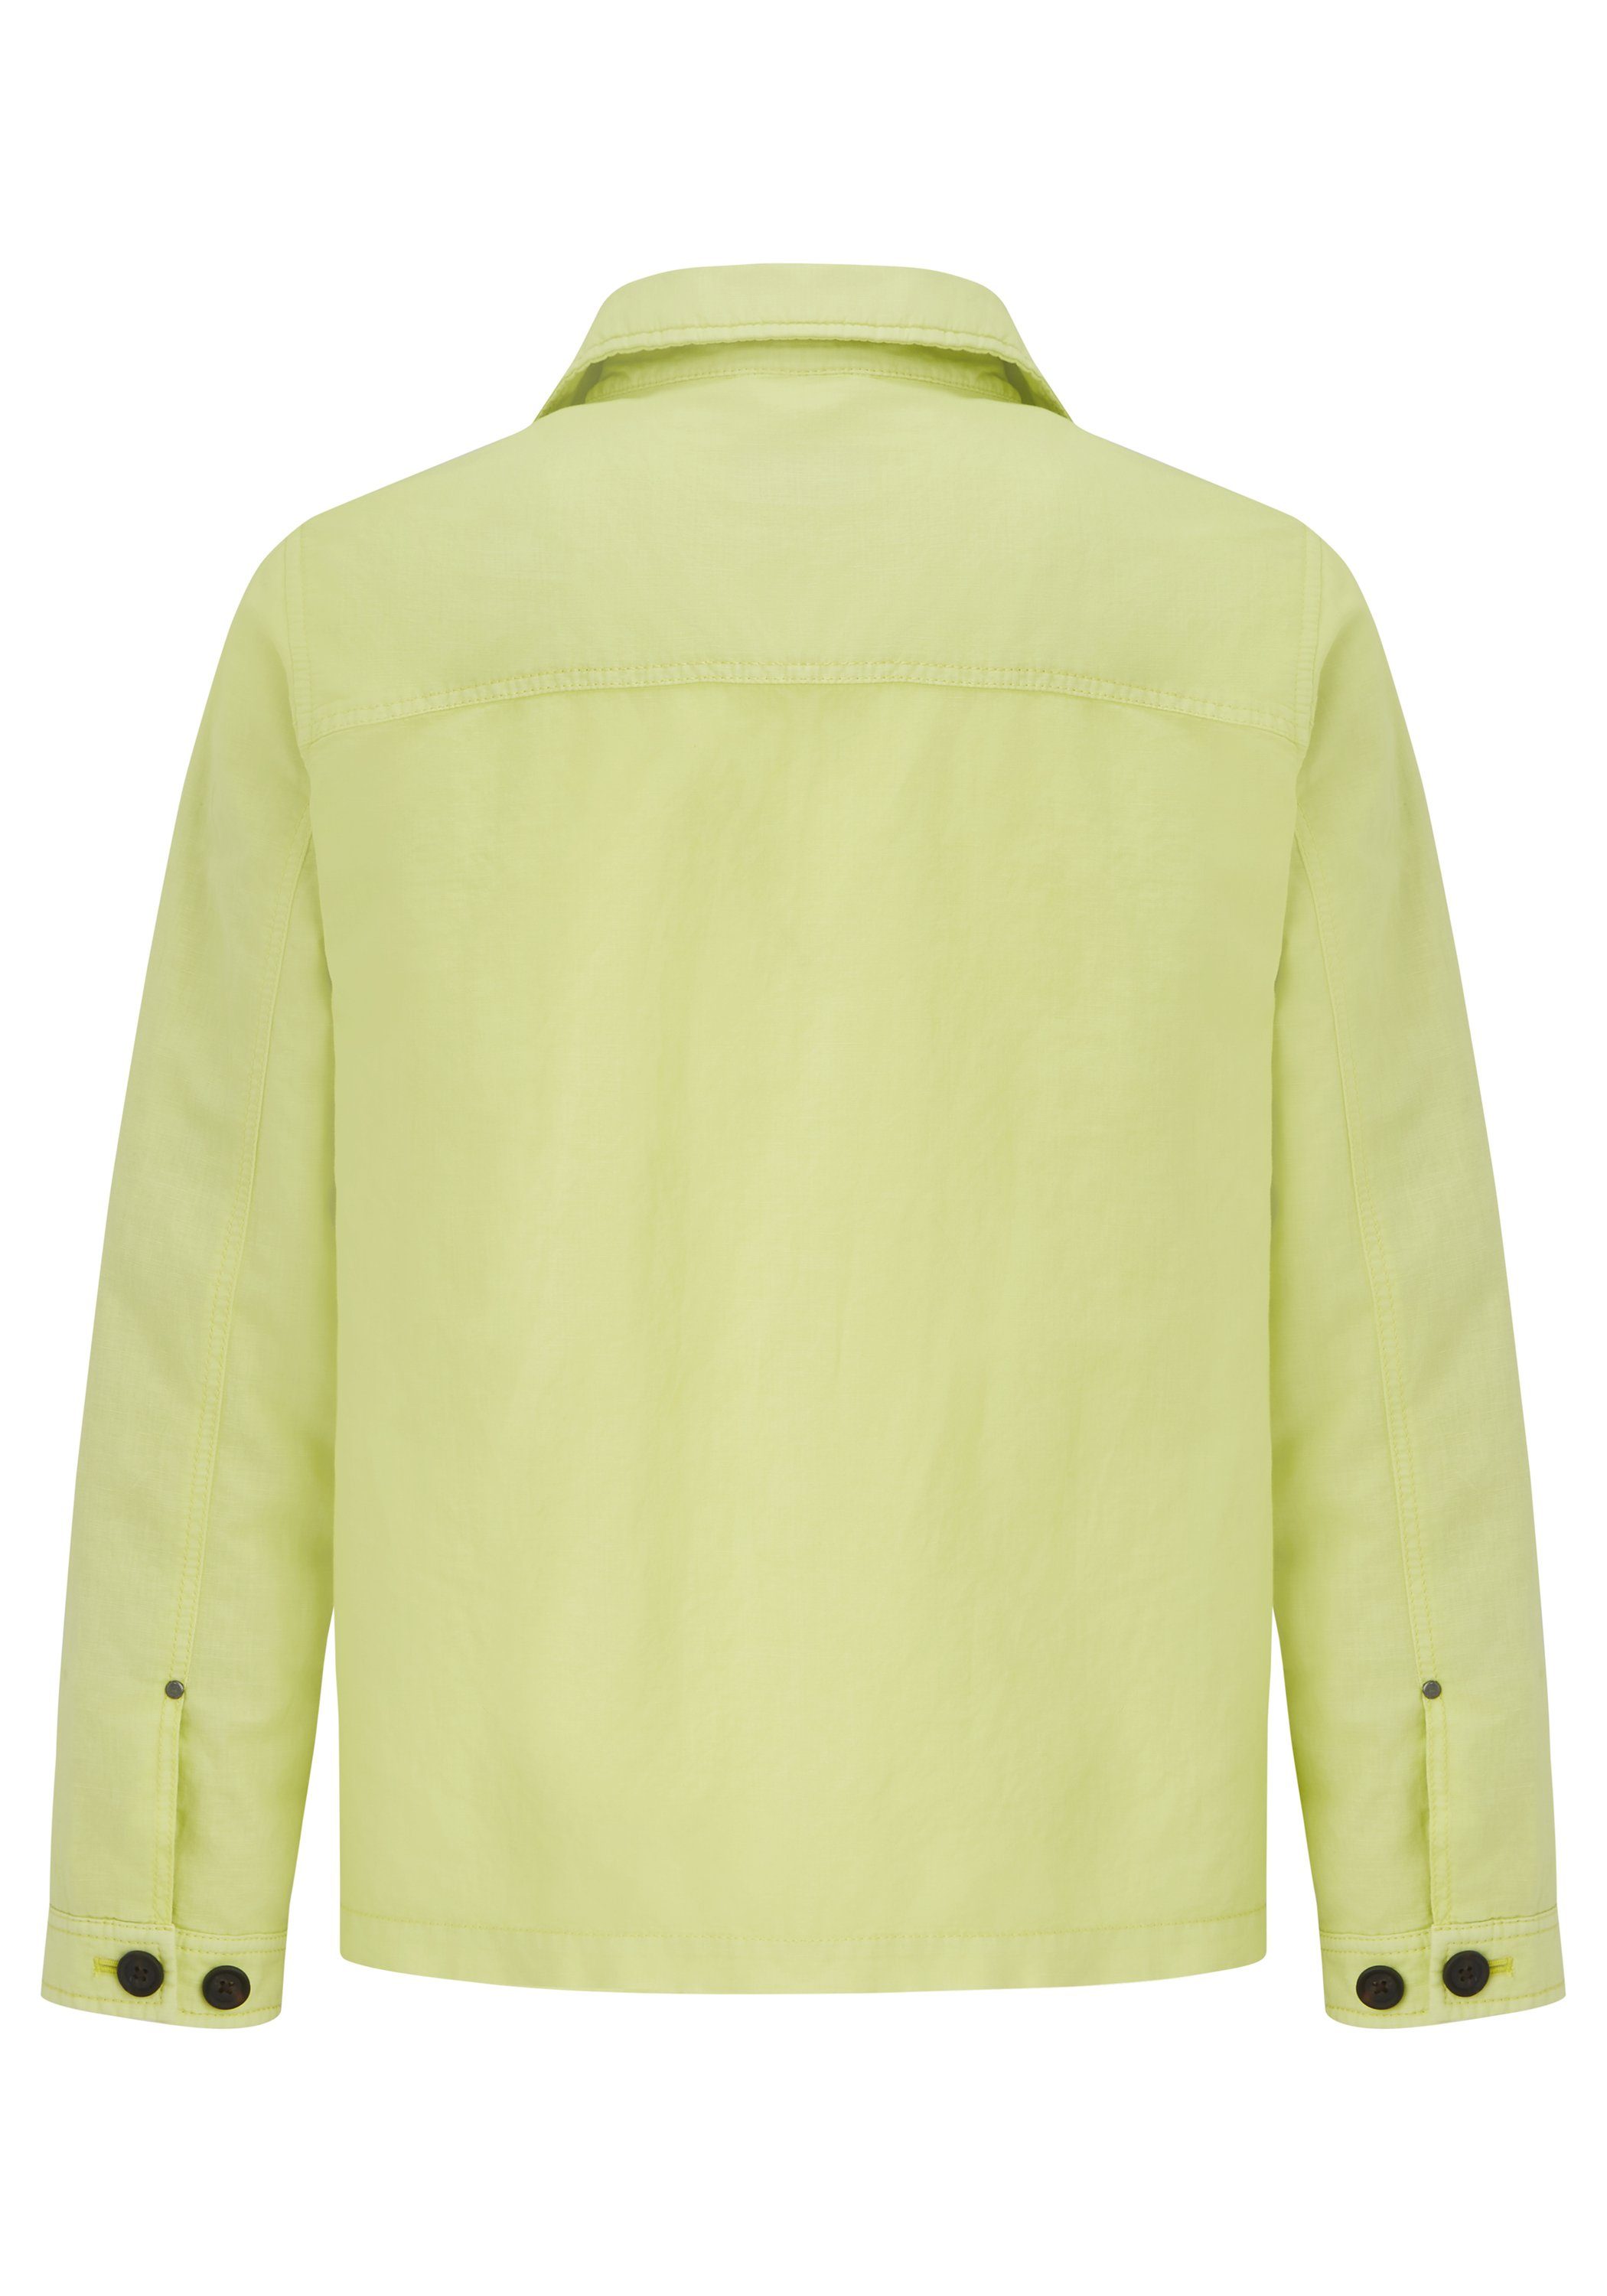 Lime aus Grover Modische Hemdjacke Redpoint Blouson der Edition 16 Shades